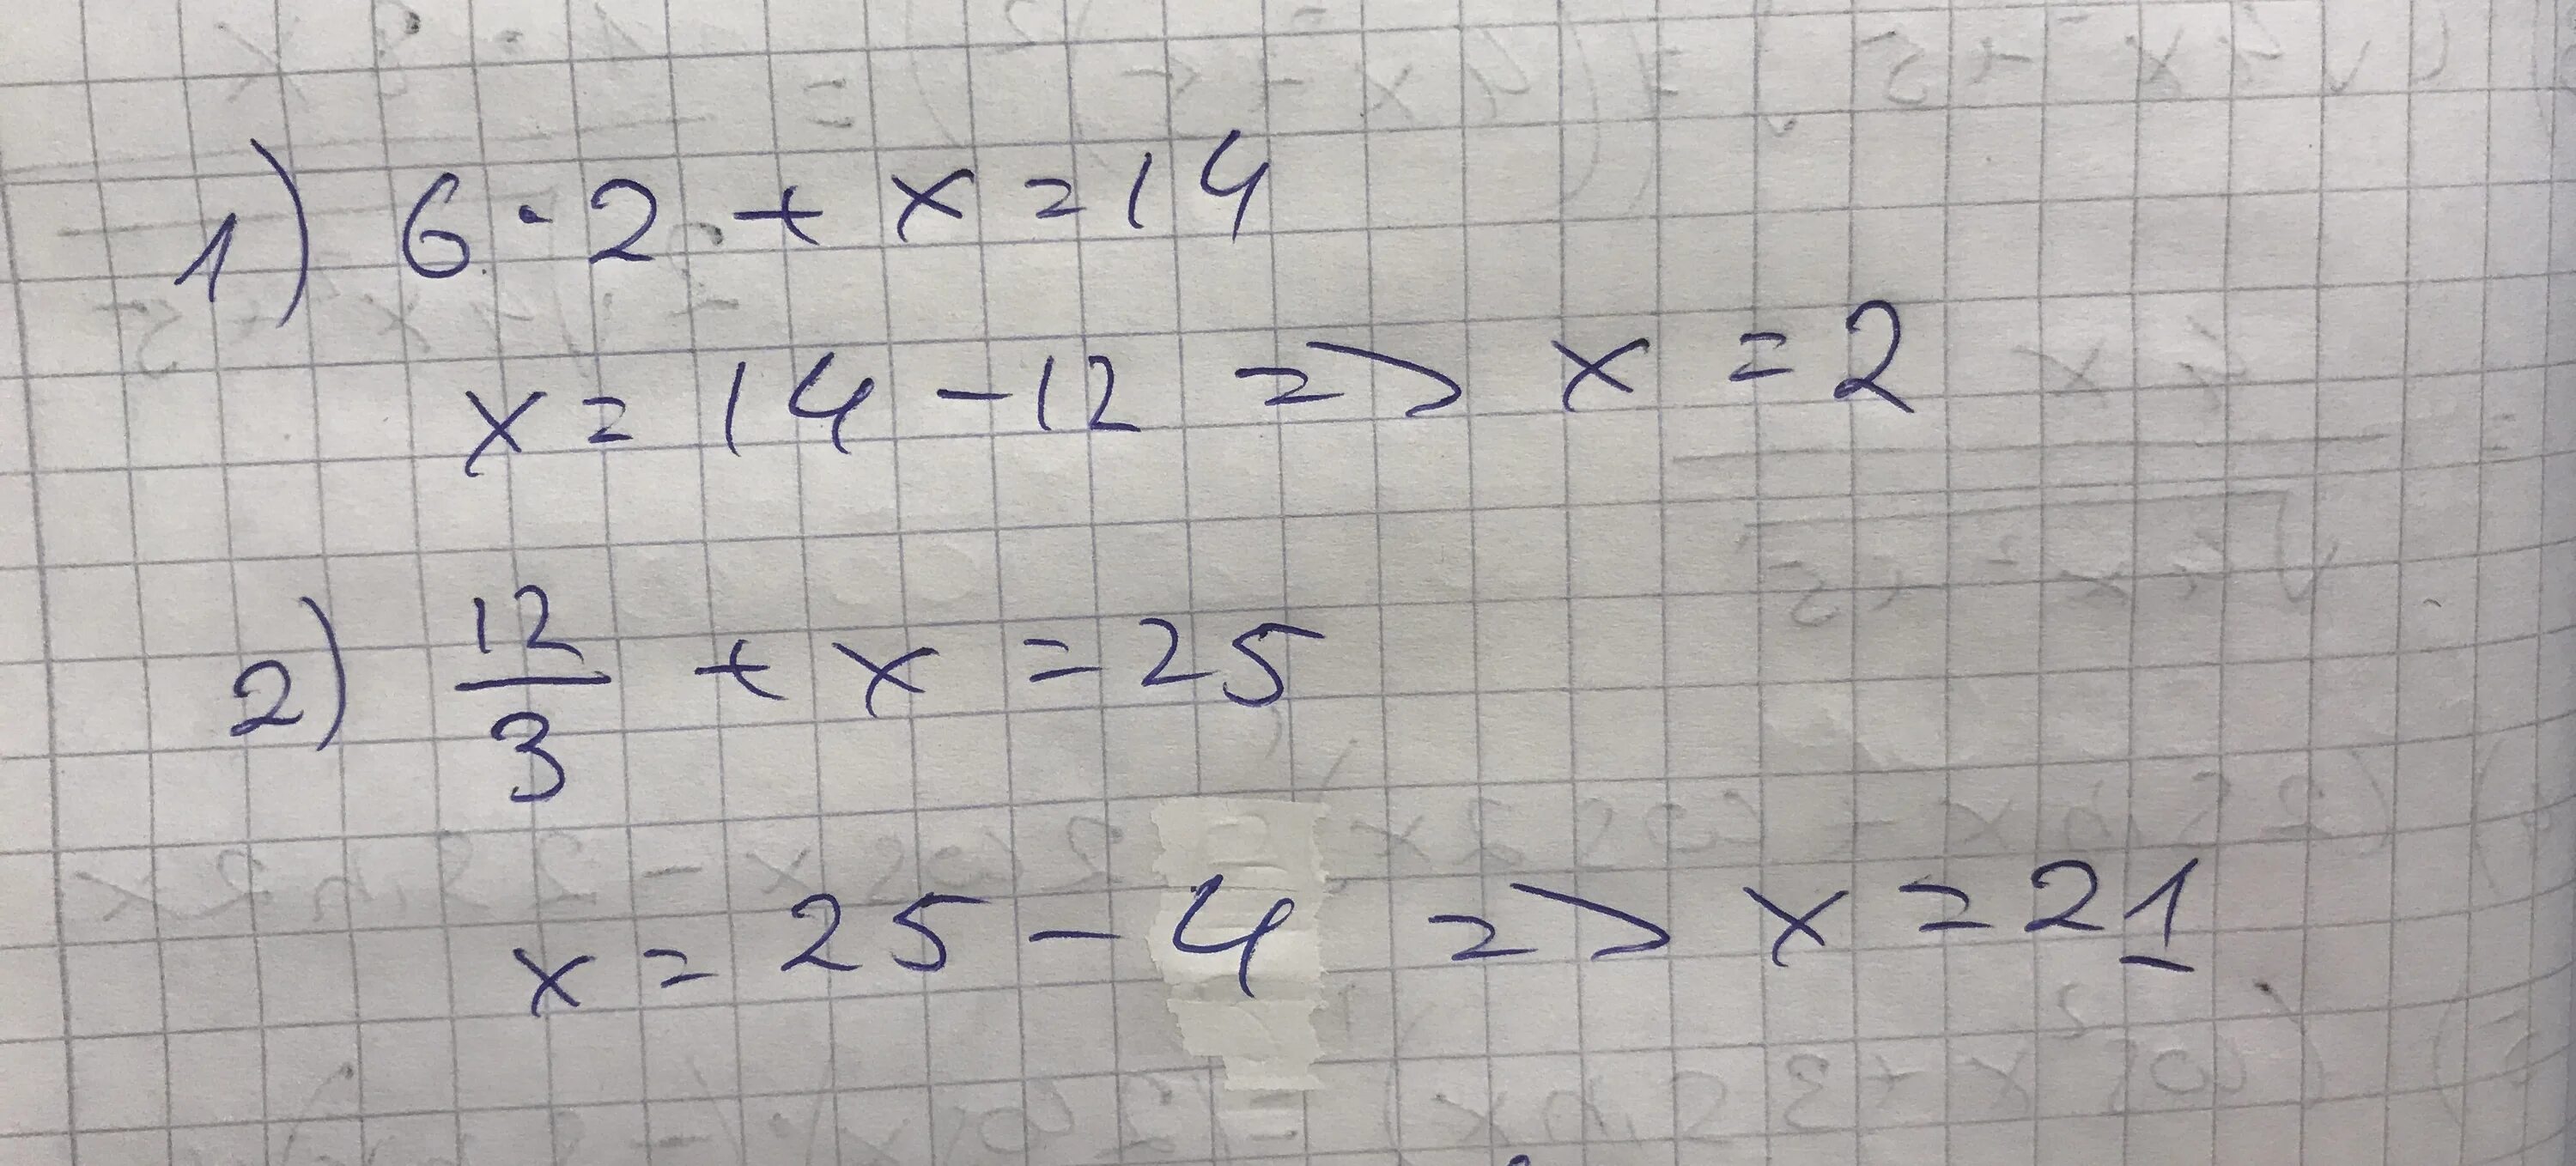 16 разделить на 8 равно 2. Решение уравнения 12 разделить на Икс равно 3. Уравнение Икс разделить на 3 равно 6. Минус 2 Икс деленное на 5 и минус 2 Икс деленное на 3. Икс равно.